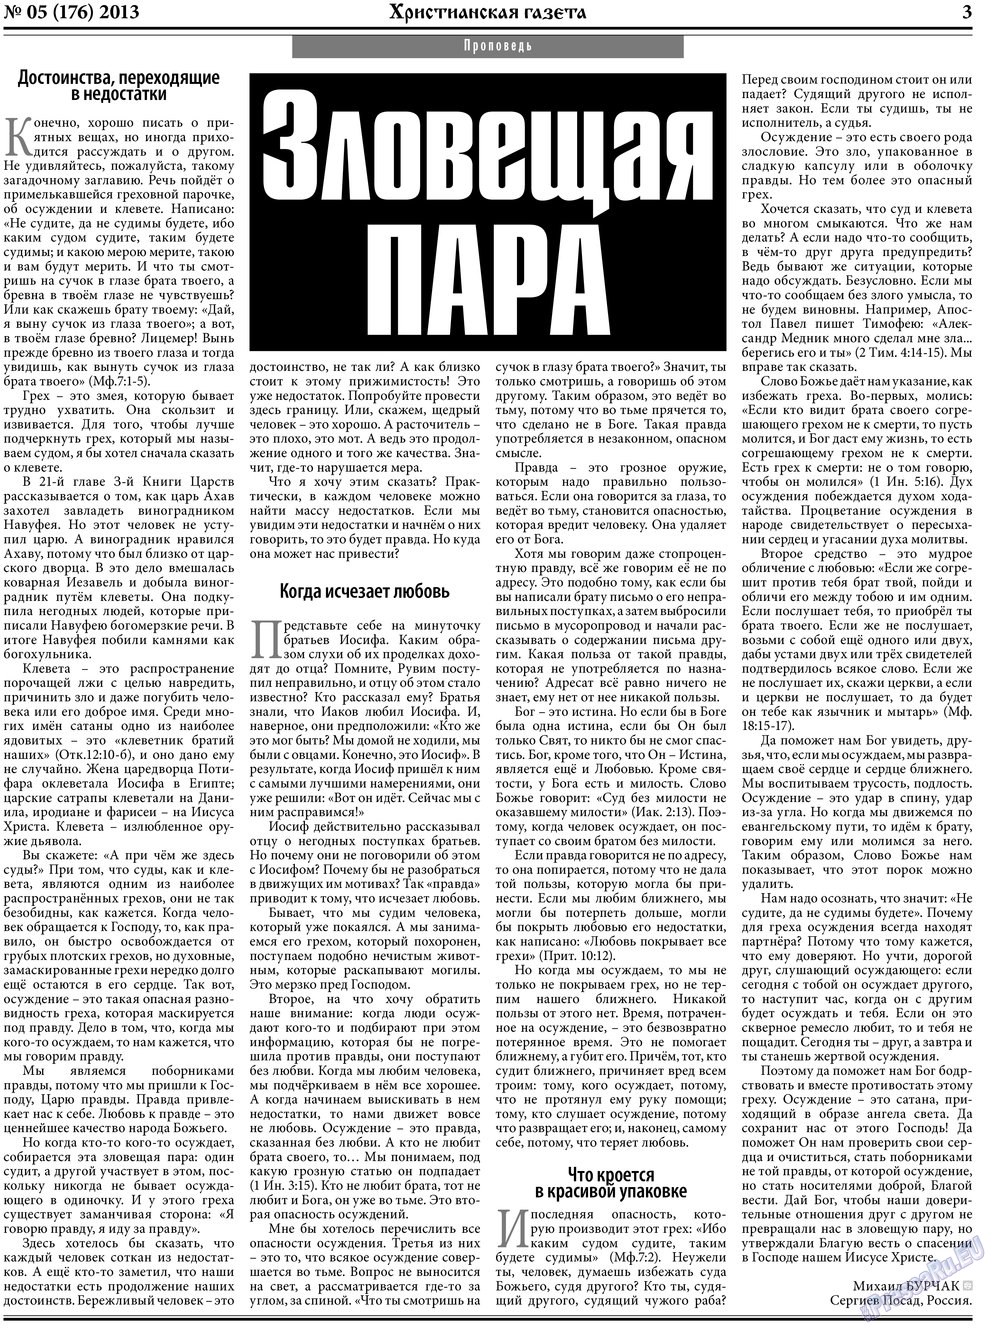 Христианская газета, газета. 2013 №5 стр.3